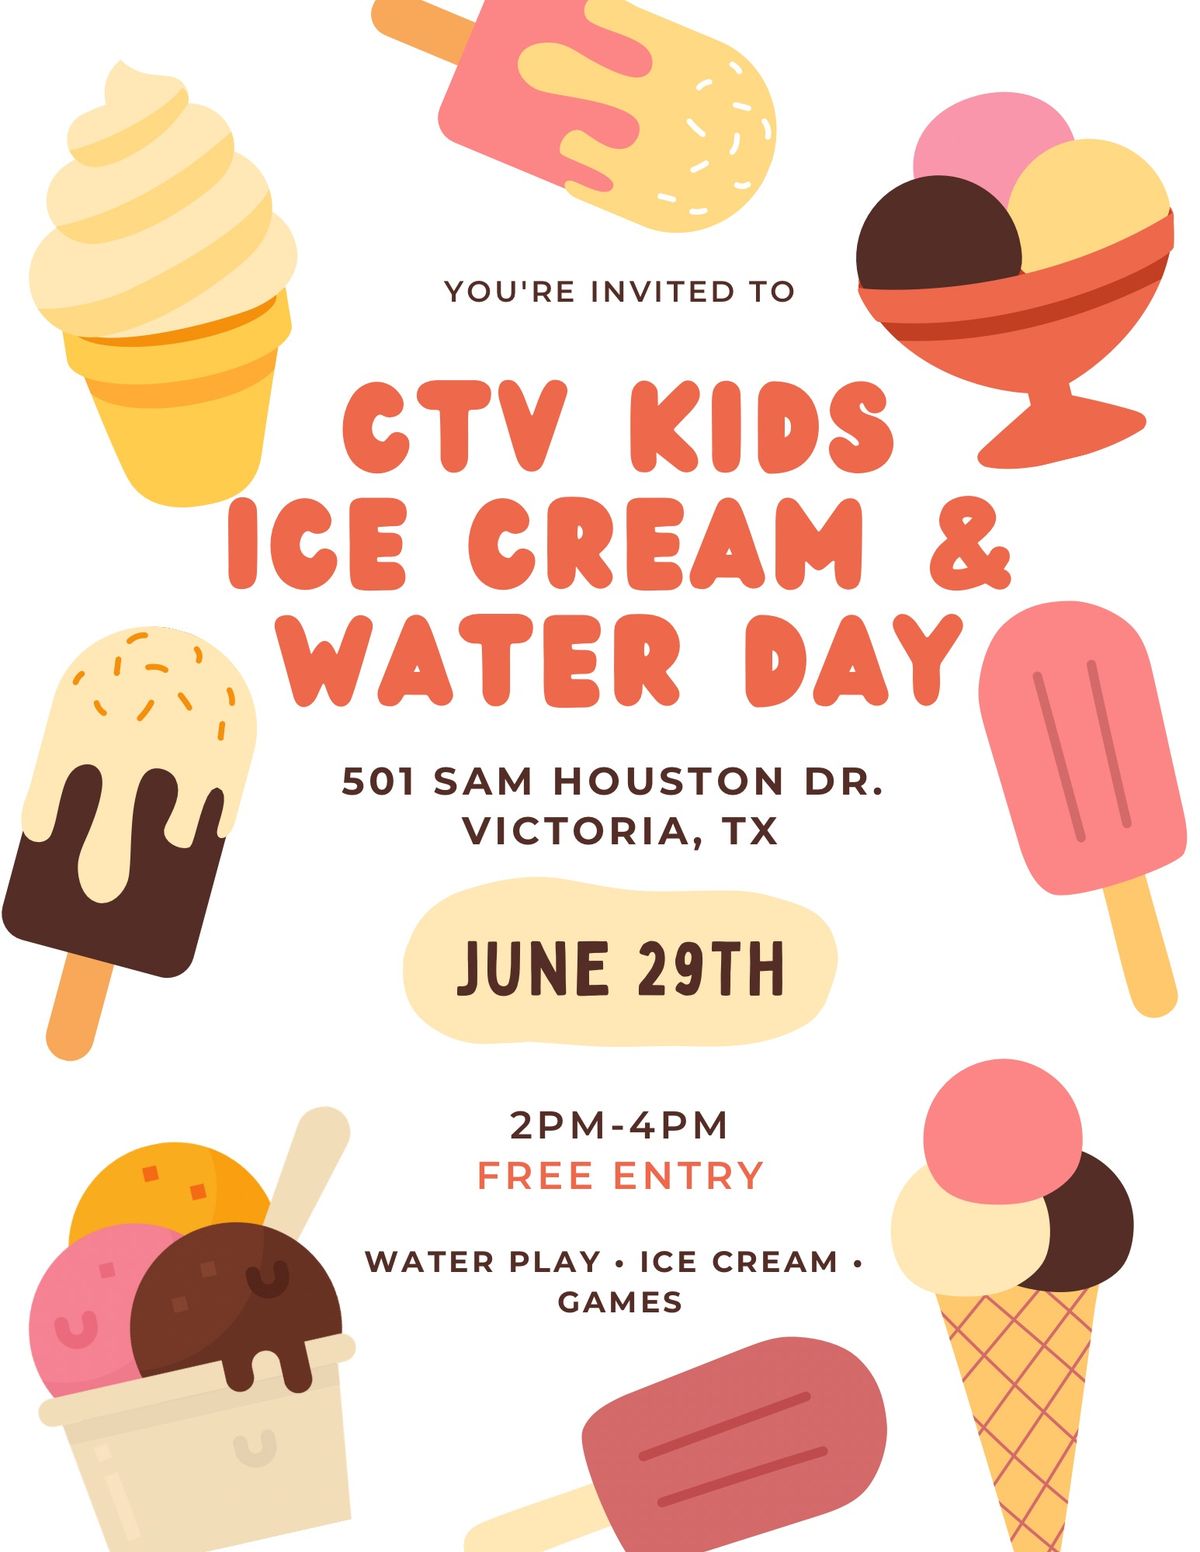 CTV Kids Ice Cream & Water Day